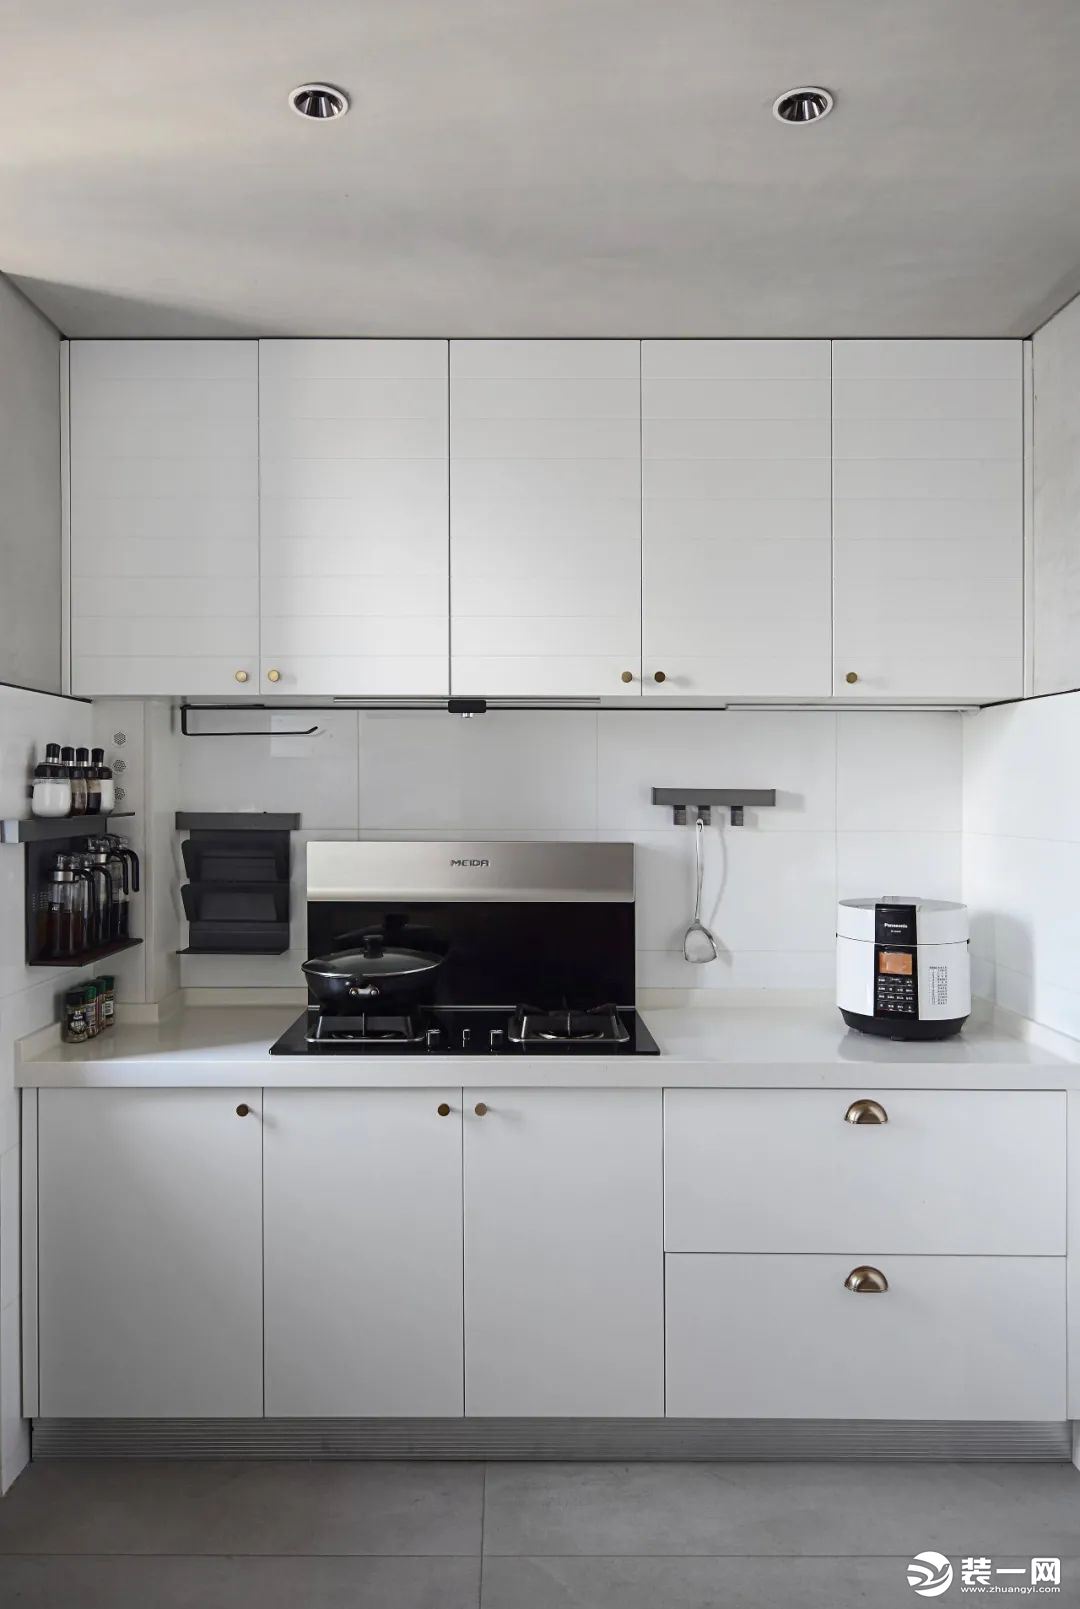 白色通顶橱柜、地柜能够尽可能多地收纳厨具等物品，满足收纳需求。